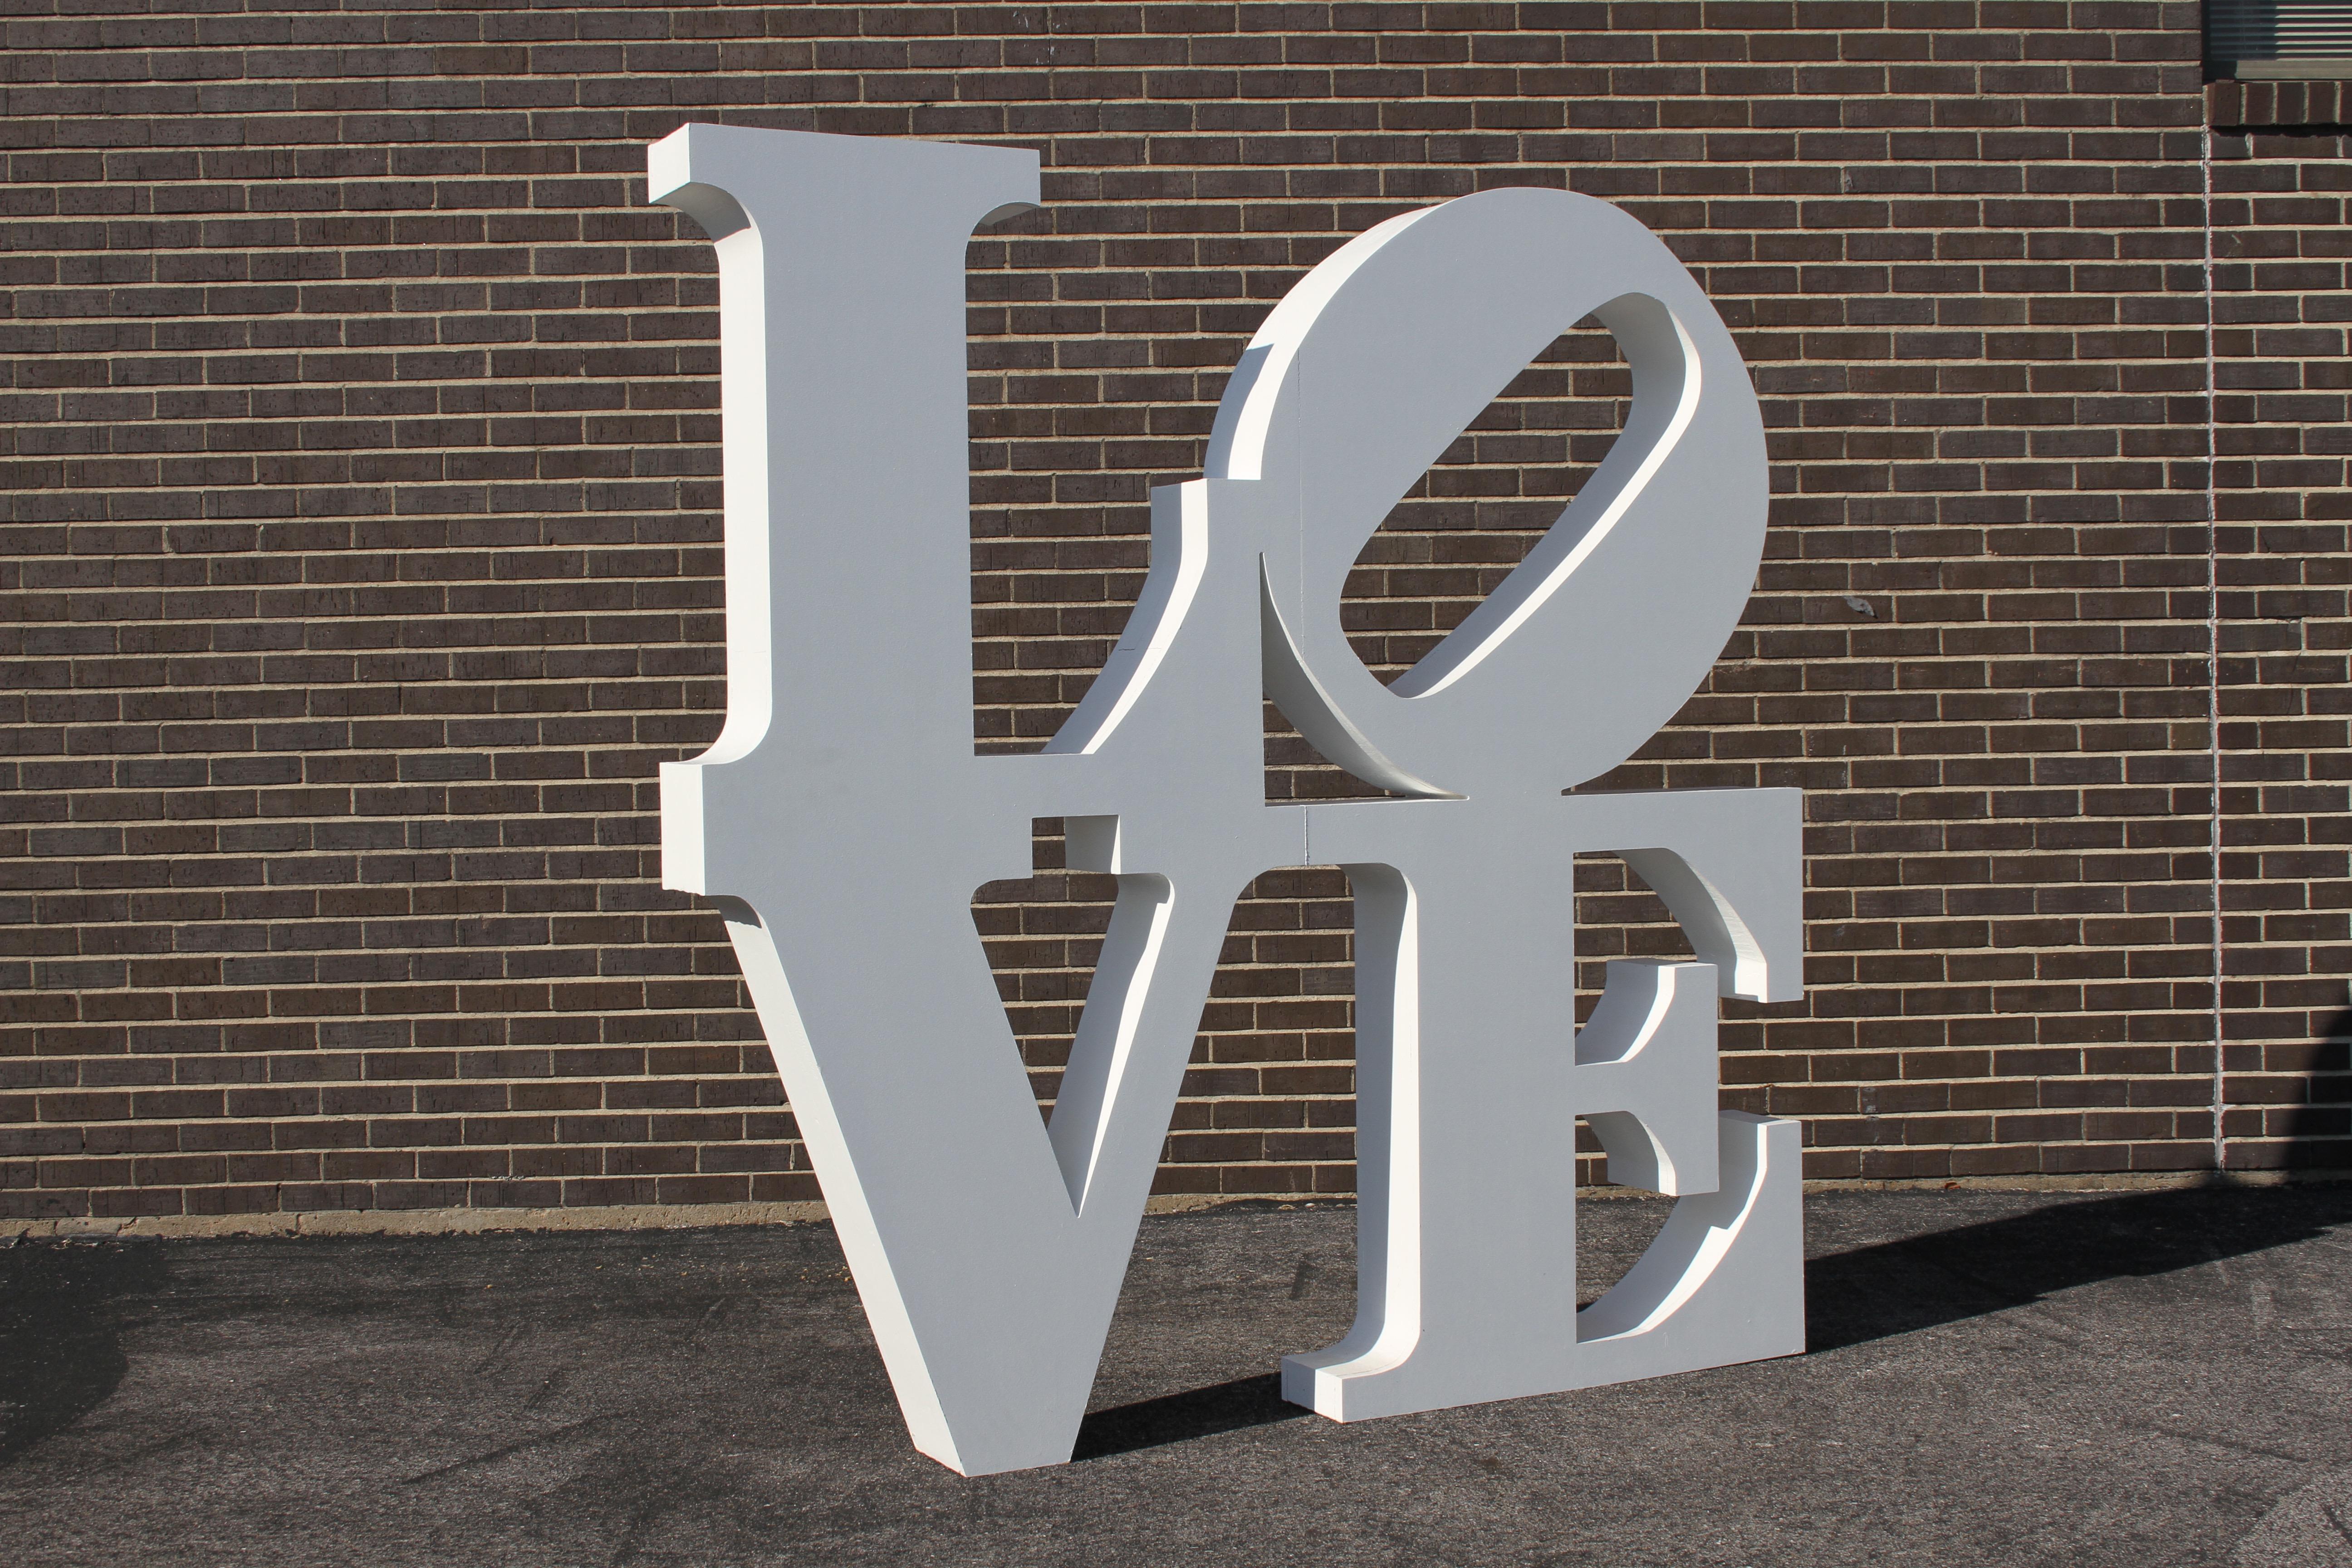 After Robert Indiana Large LOVE Sculpture Pop Art - 72